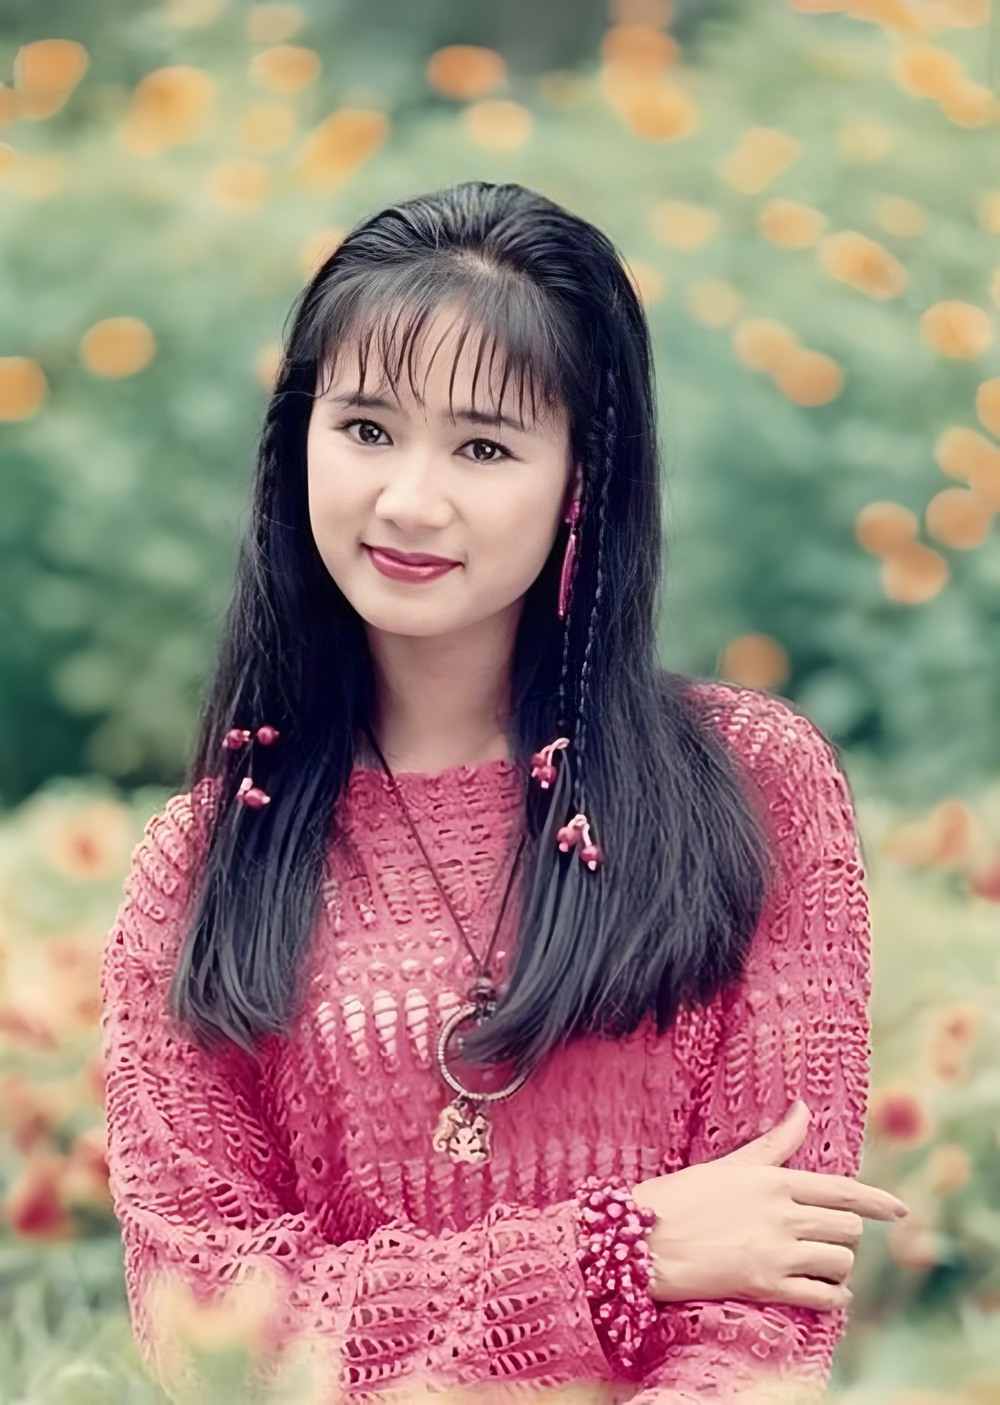 Showbiz Việt có 1 mỹ nhân được ngợi ca sở hữu nhan sắc là khuôn vàng thước ngọc, giờ 54 tuổi vẫn cực đẹp - Ảnh 5.